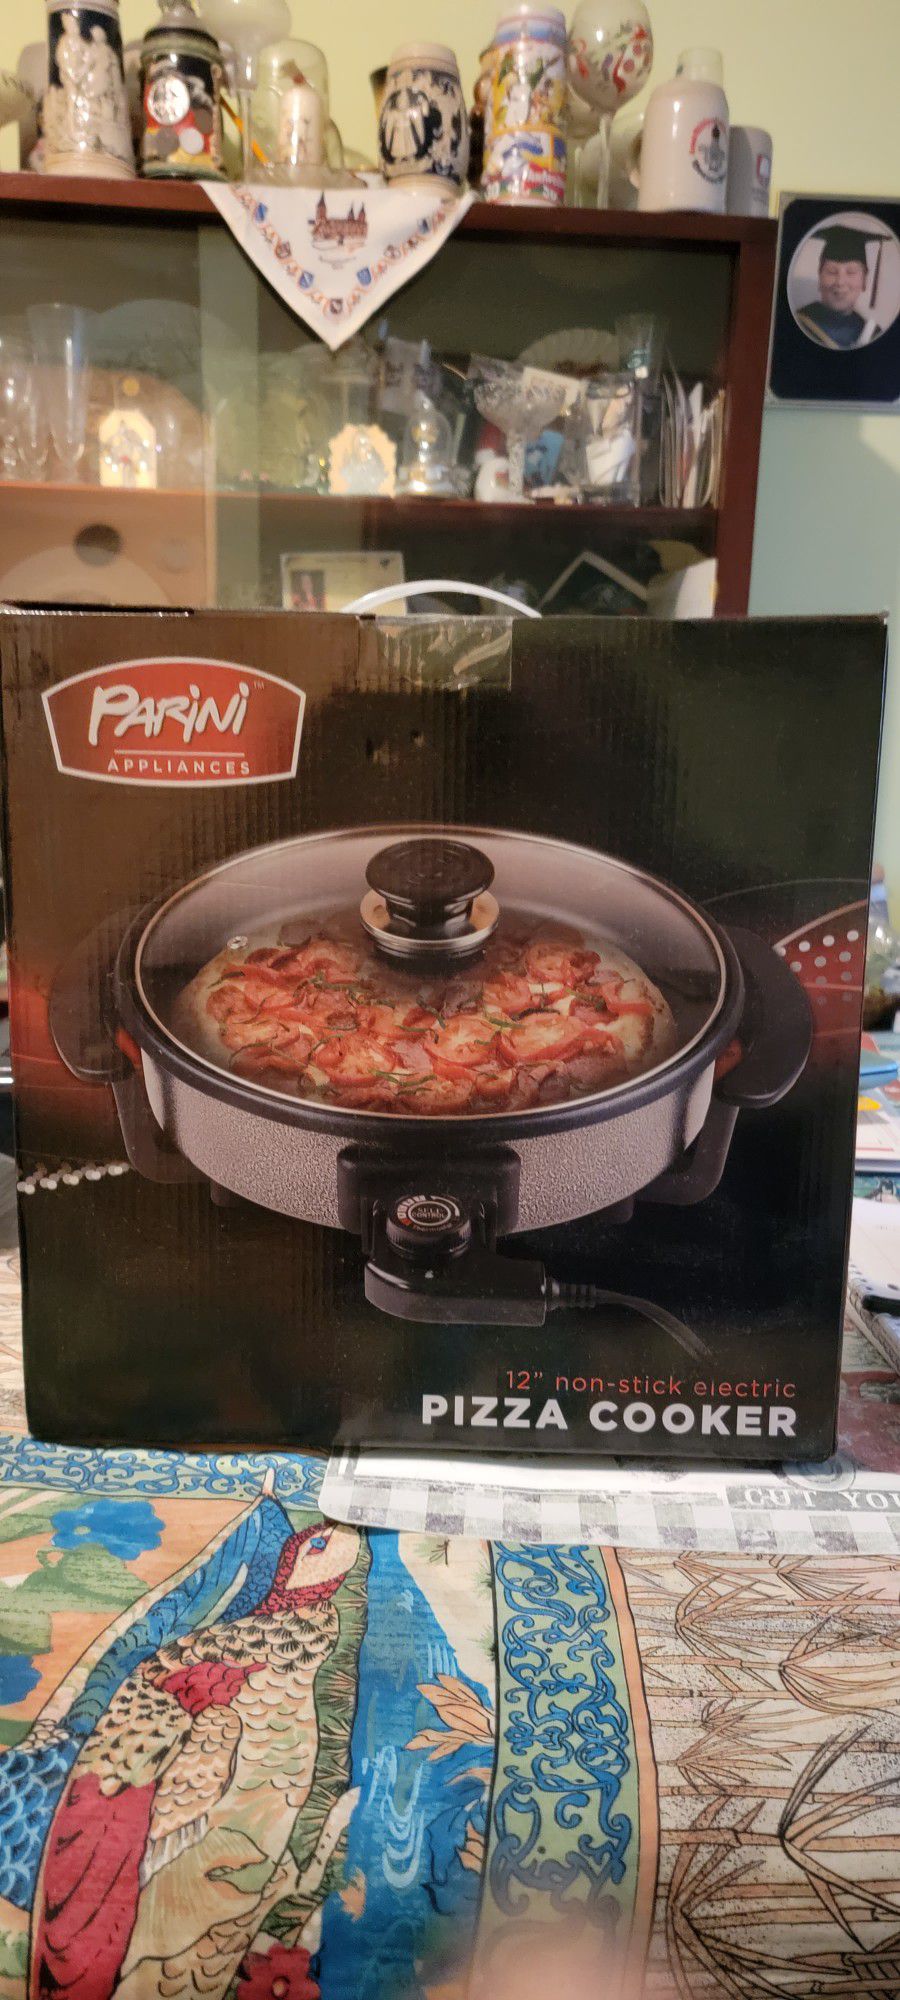 Parini Appliances 12" Non-stick Electric Pizza Cooker